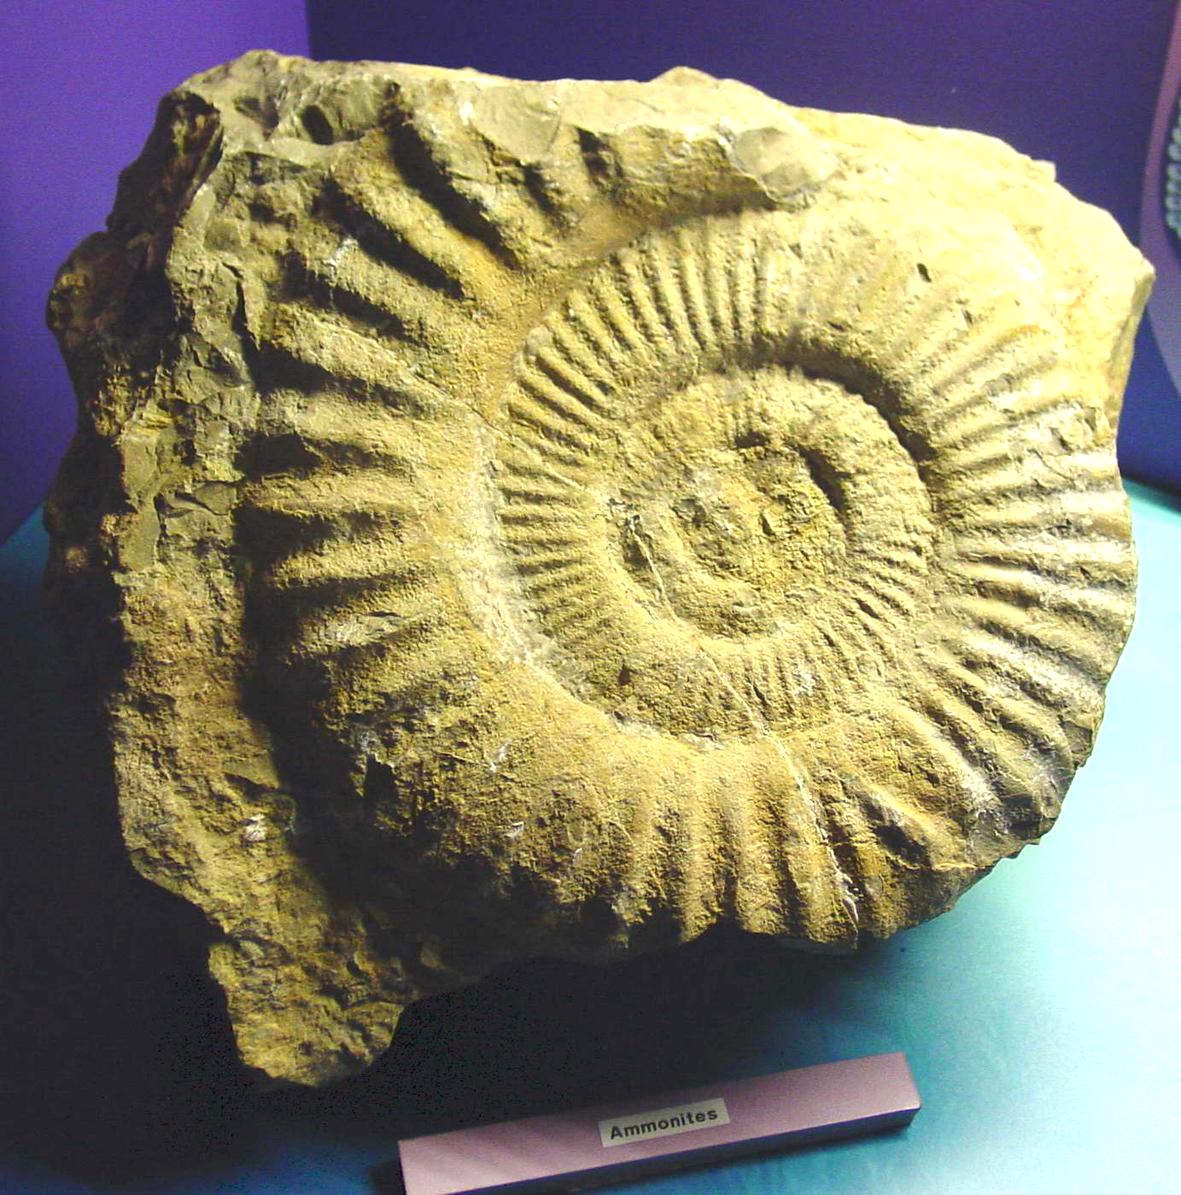  "Fósseis do Mesozóico" em exposição na Batalha